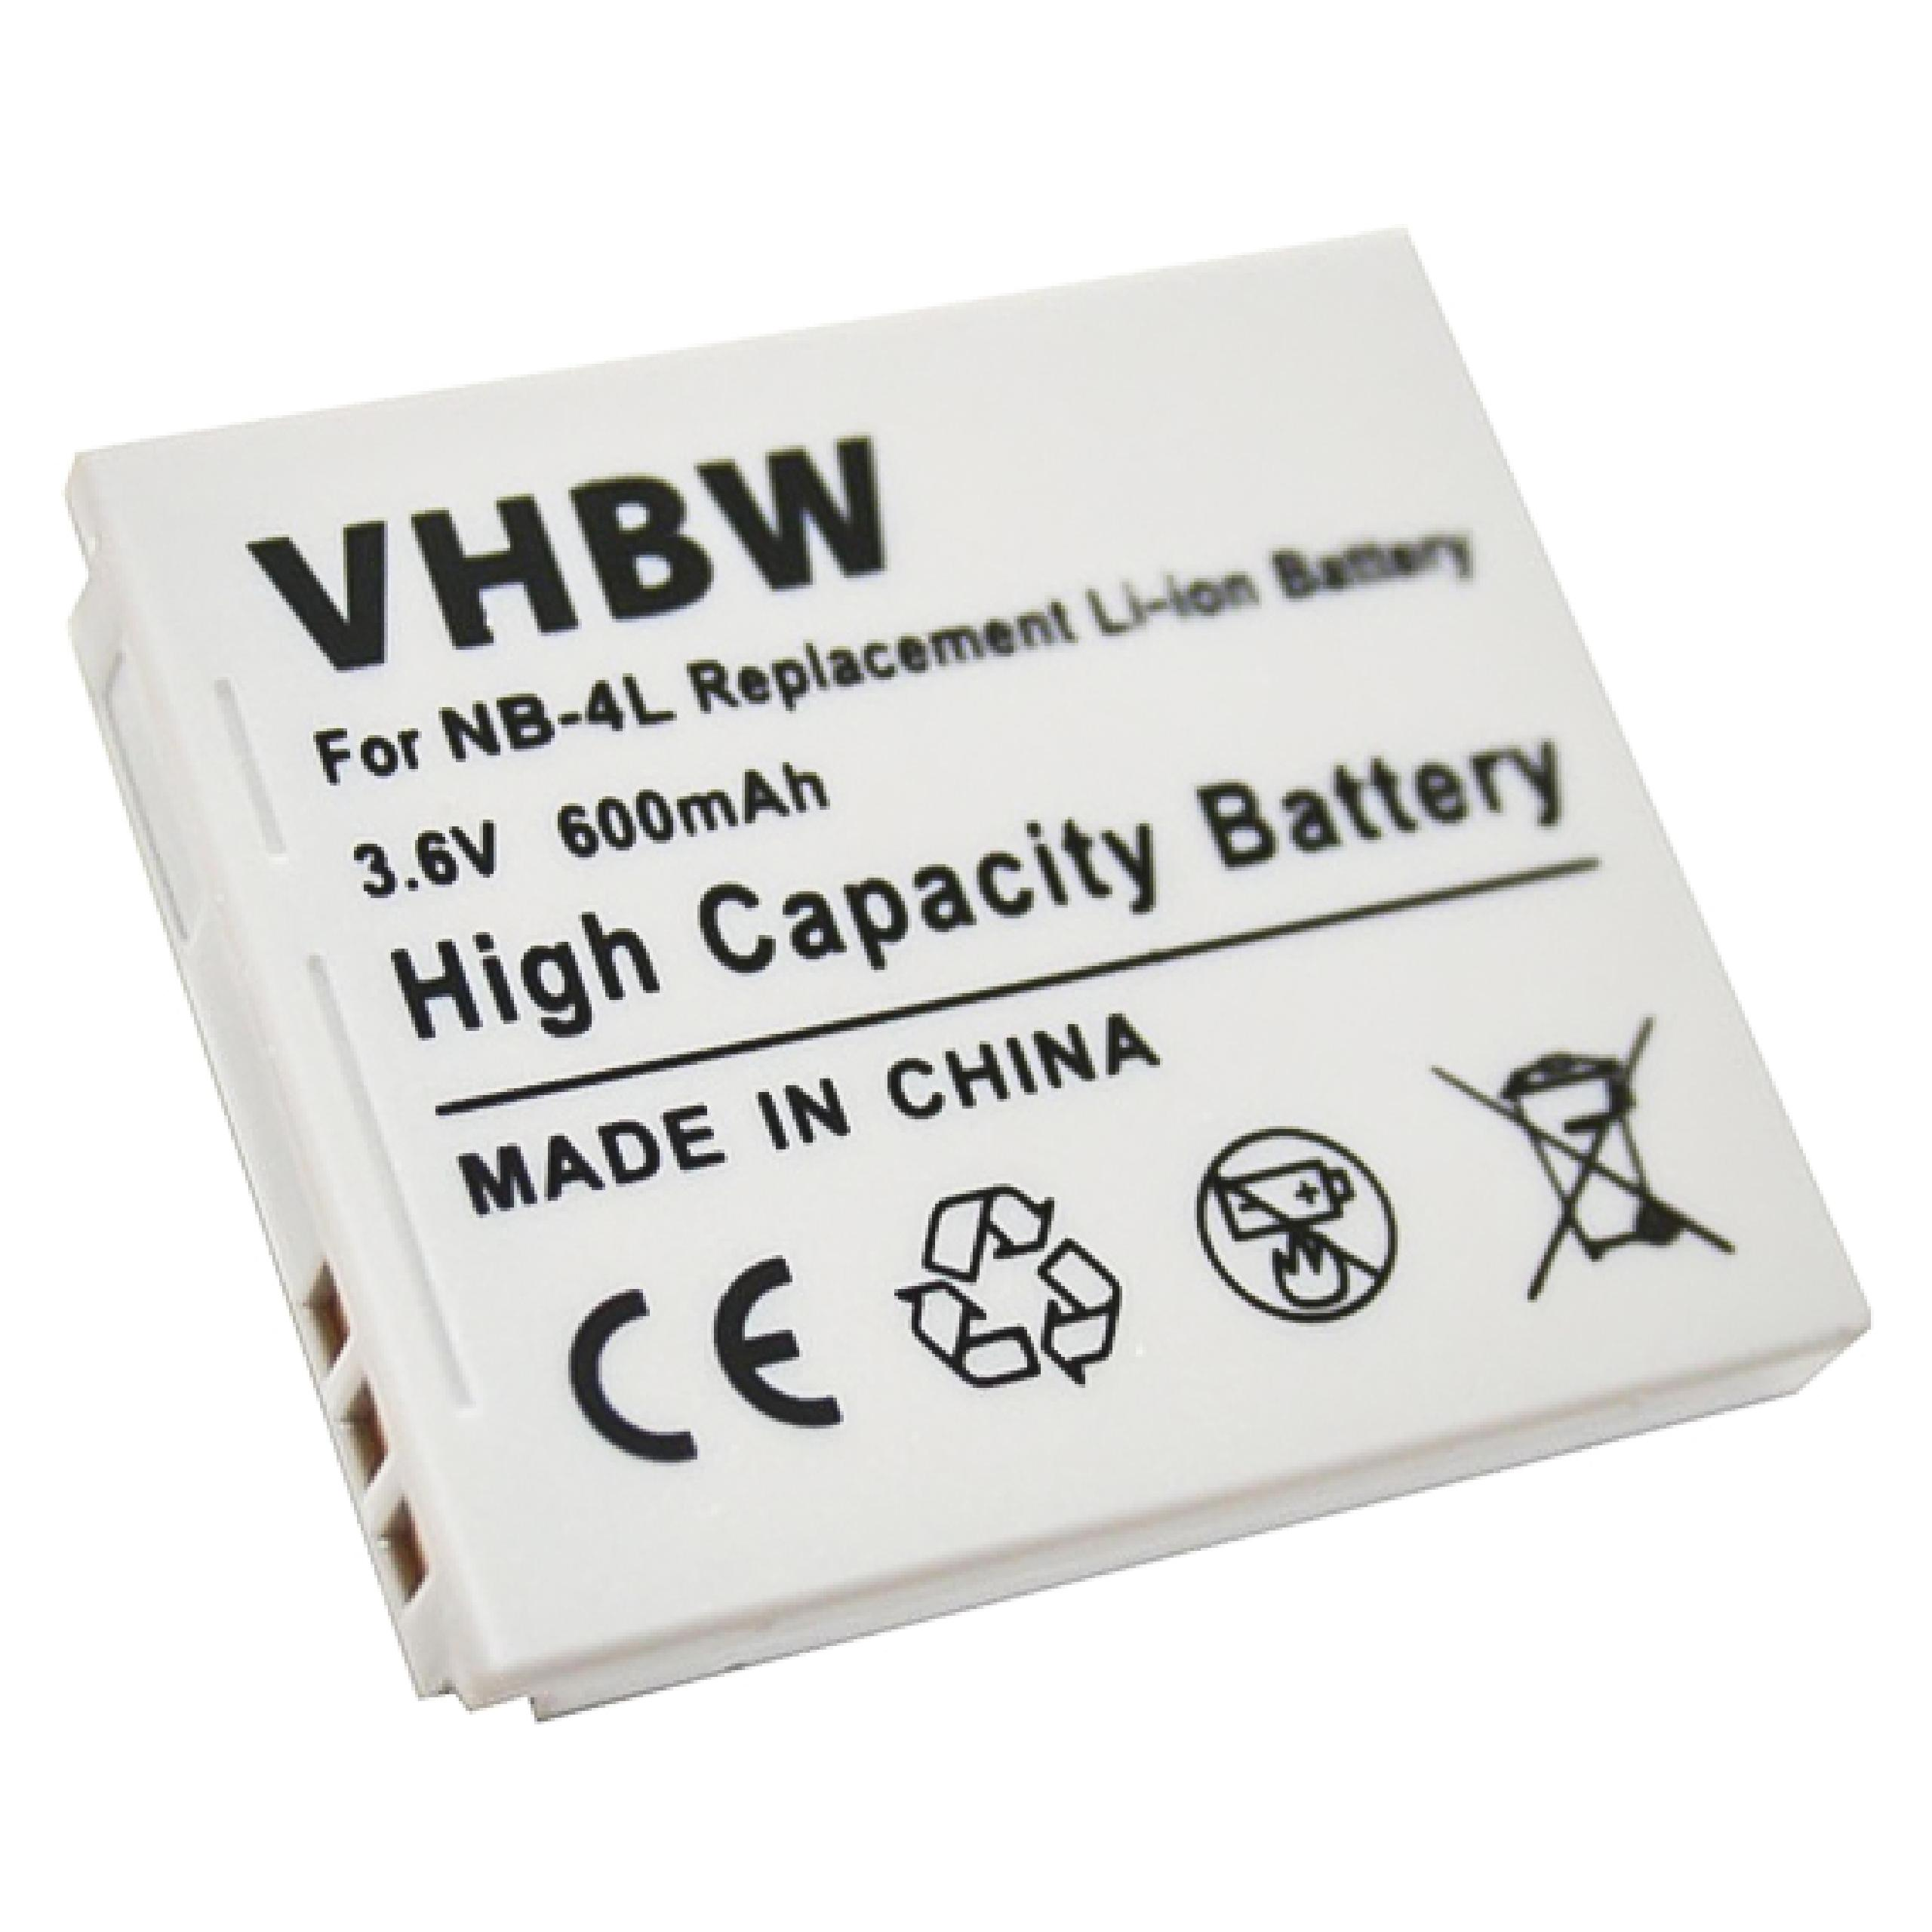 VHBW kompatibel mit 65, Wireless i7, Digital Li-Ion 82, Akku, 75, 70, 55, i Canon 600 Ixus 80 Zoom, 3.6 Volt, 50, is, 60, mAh